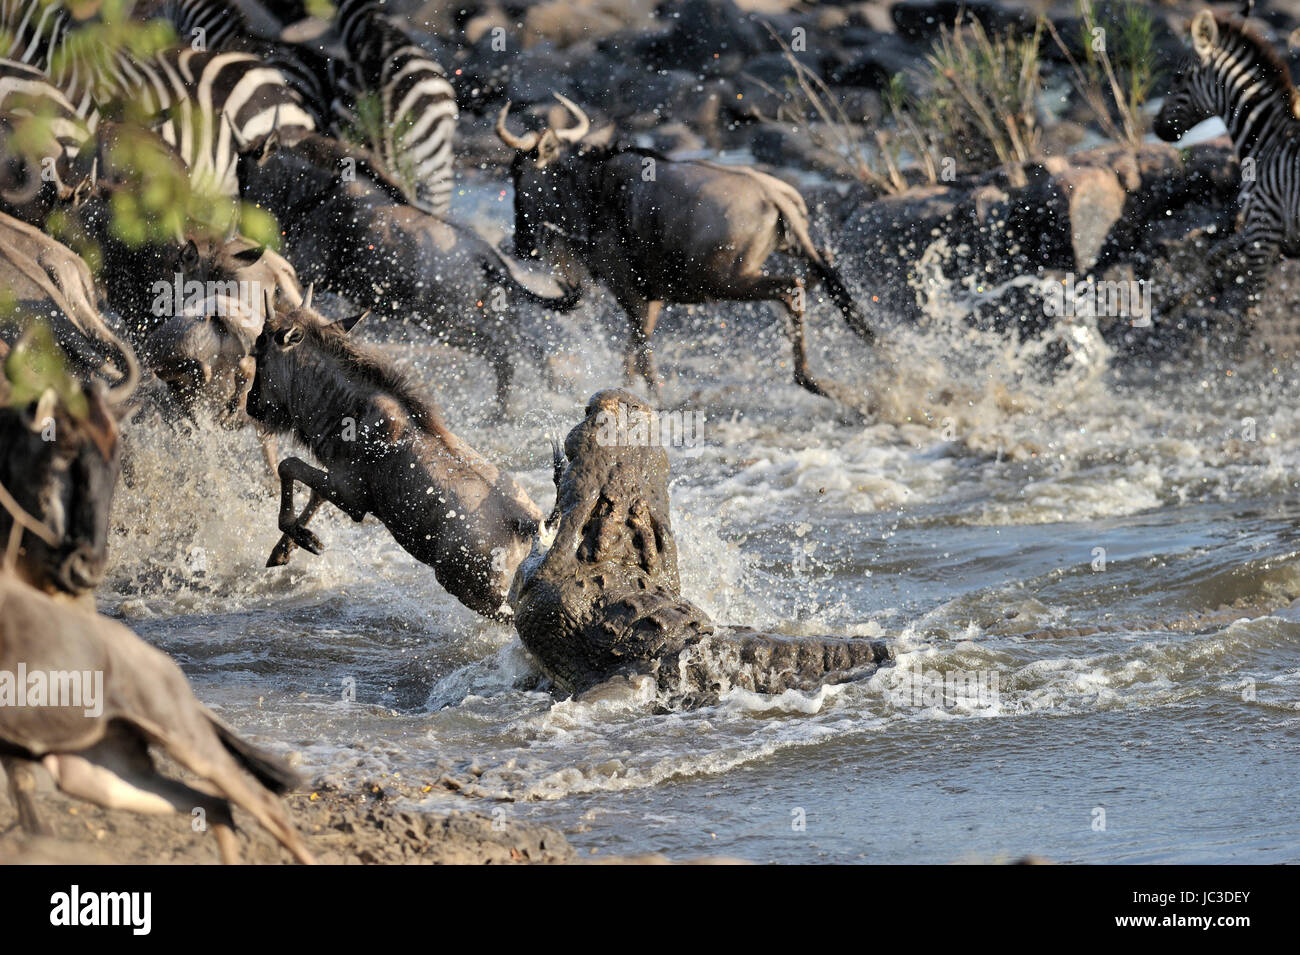 Los ñus (Connochaetes taurinus) atacado por (Crocodylus niloticus) en el río Grumeti, Parque Nacional del Serengeti, Tanzania Foto de stock